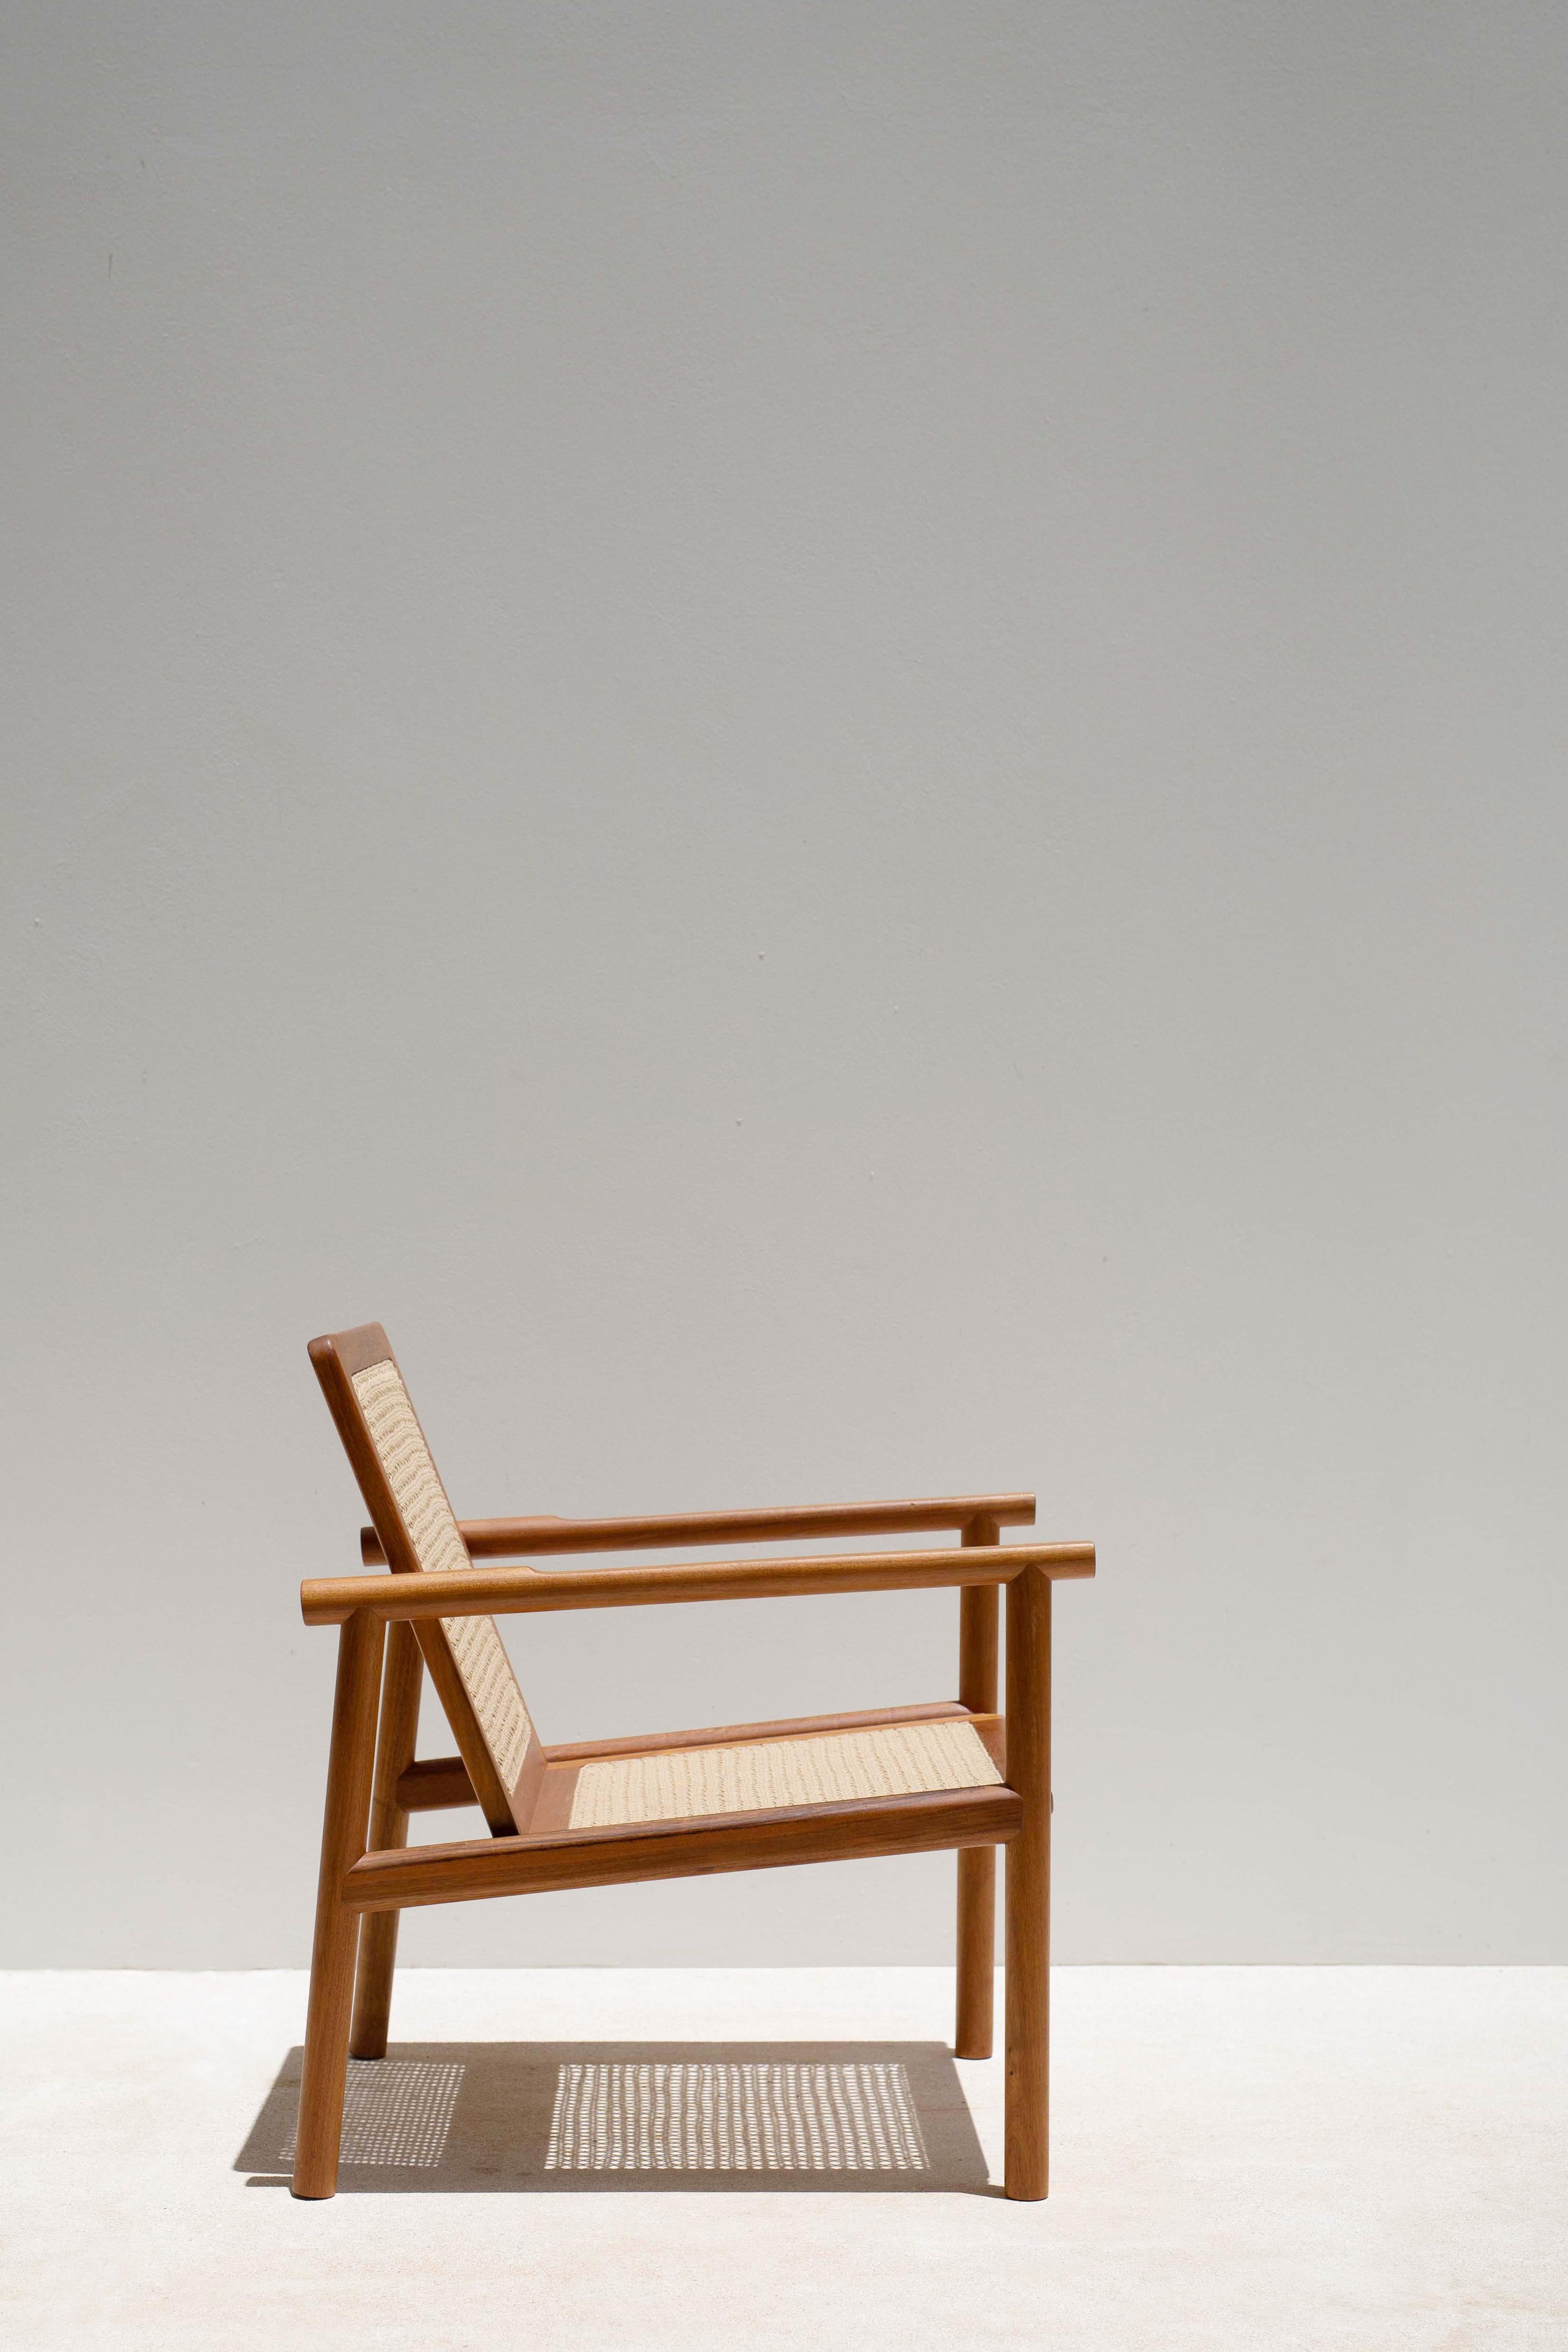 Das Design des Sessels Cocom ist von den traditionell in Yucatan geflochtenen Korbwippen und Sesseln inspiriert. Heutzutage ist diese Tradition am Aussterben, ebenso wie die Kunst, Stühle von Hand zu weben. Deshalb soll das Design der